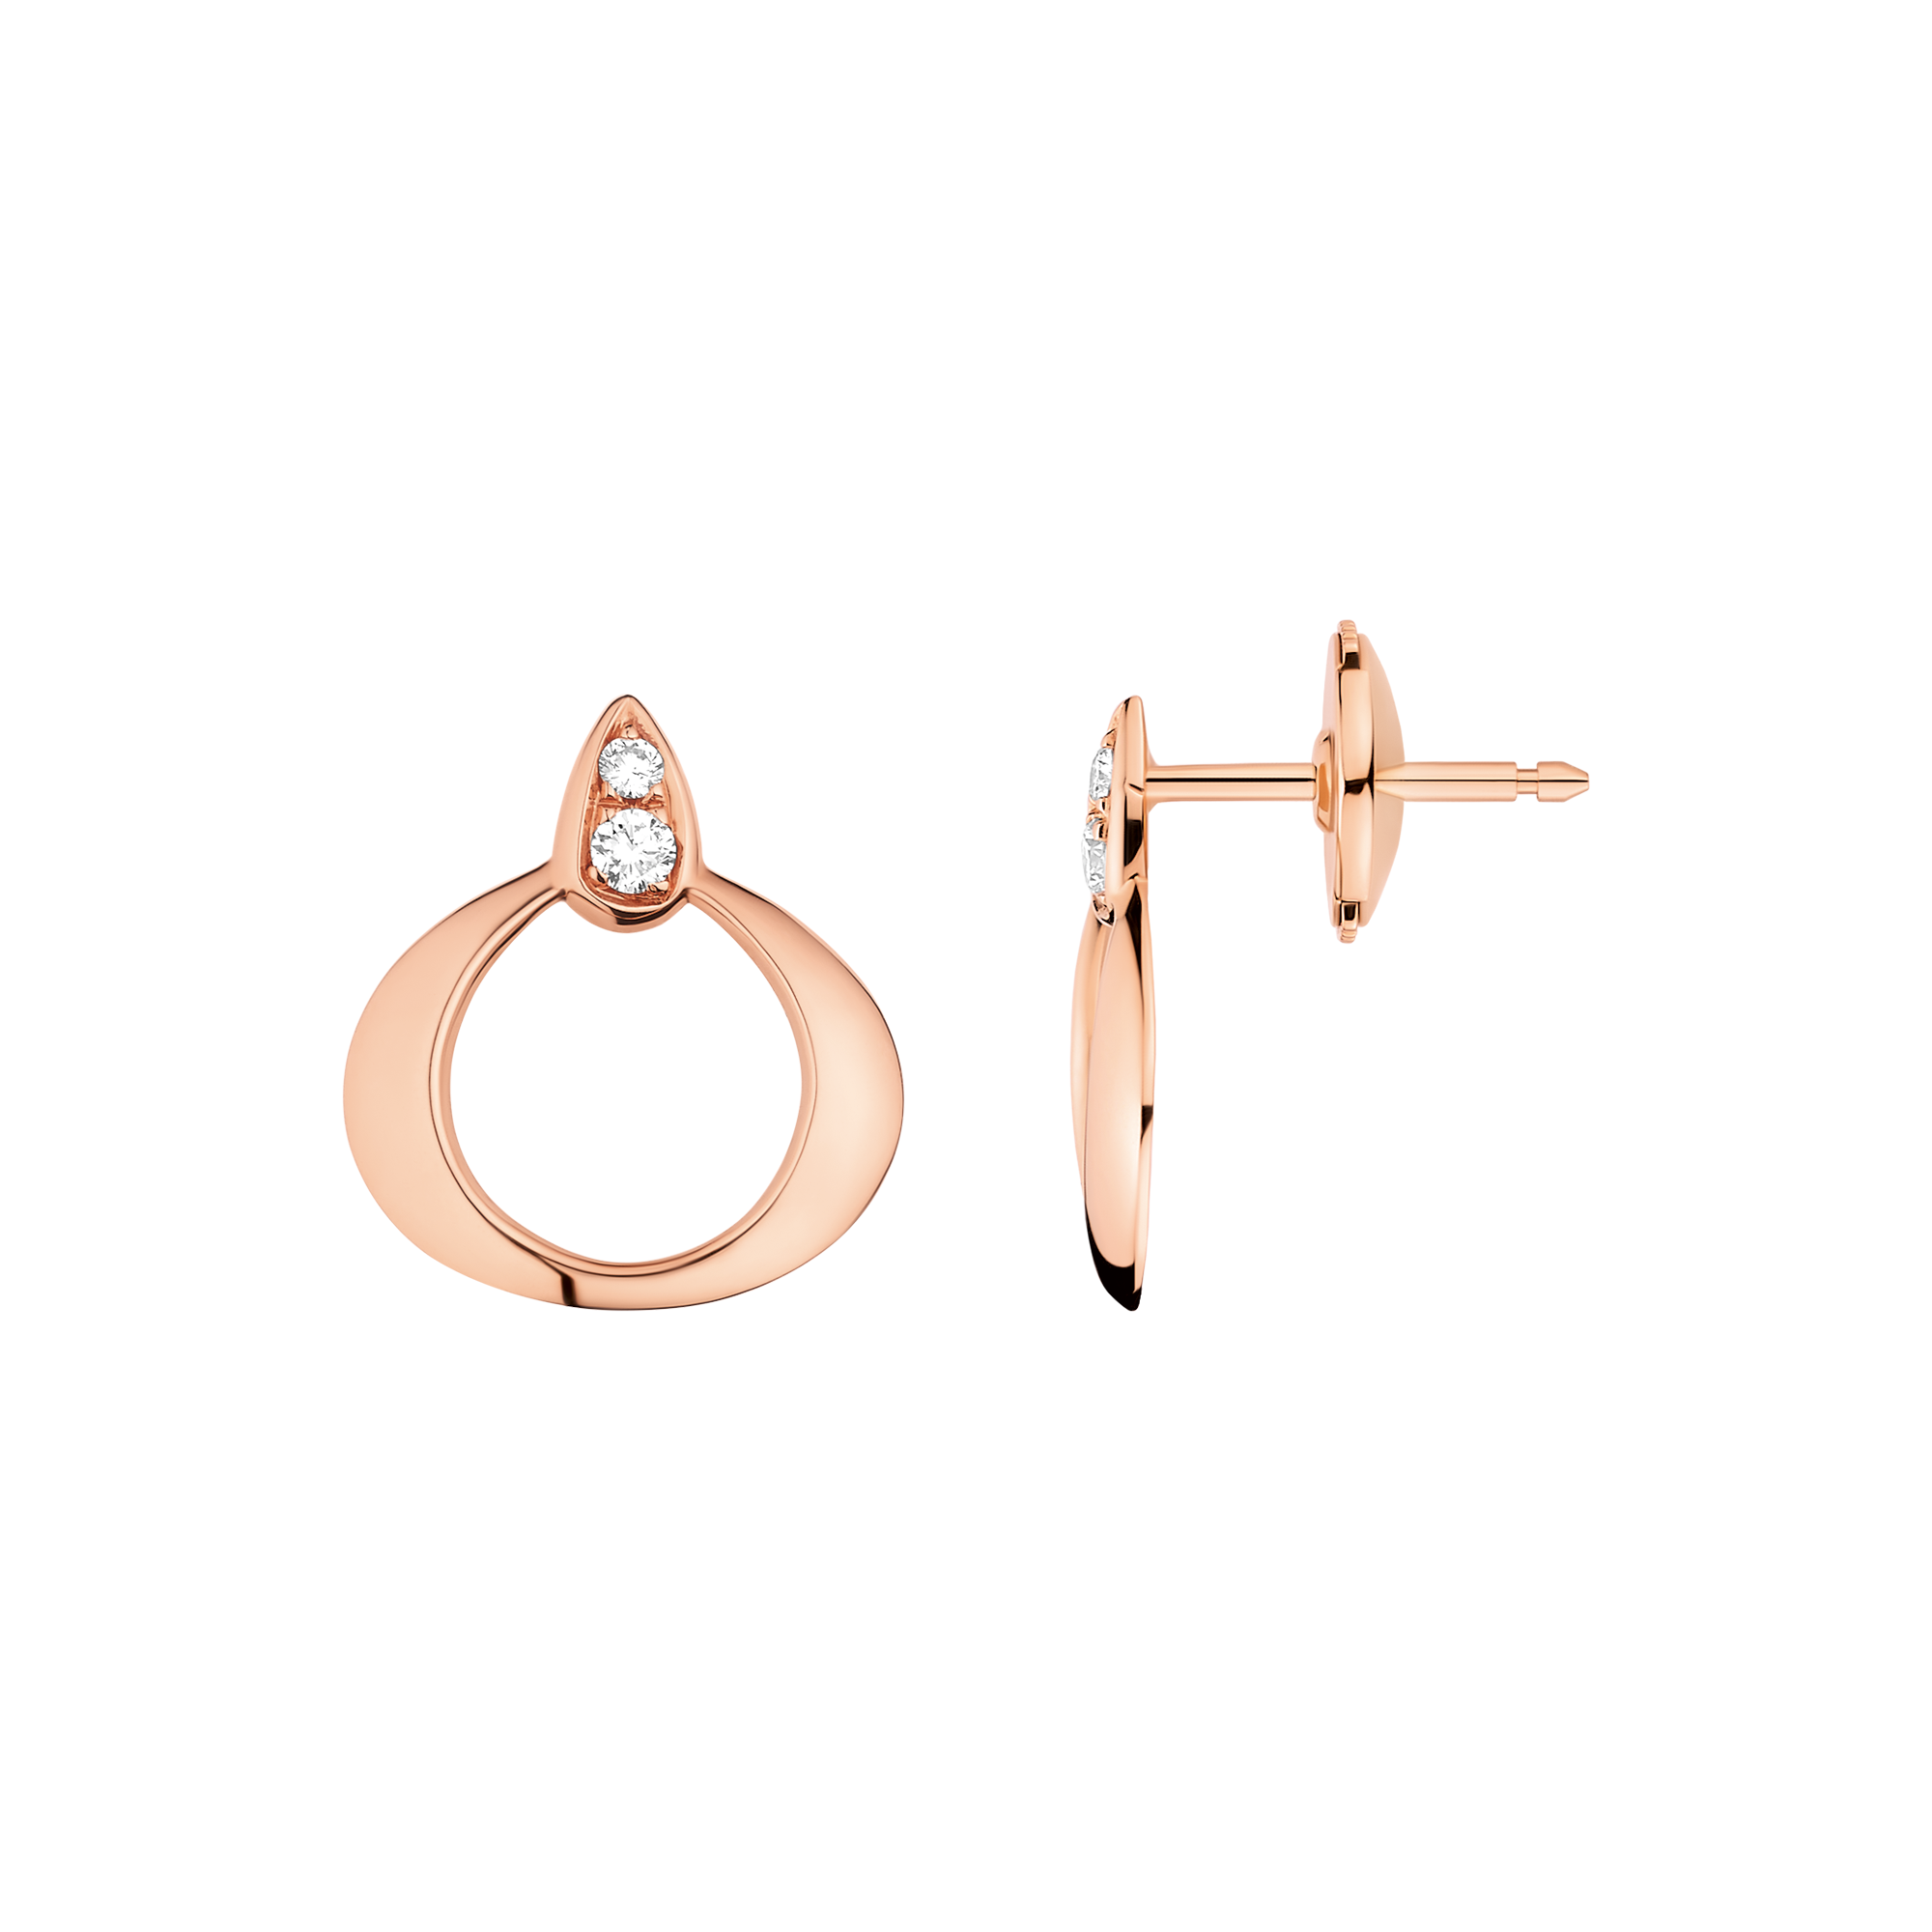 Omega Dewdrop Earring, 18K red gold, Diamonds - E55BGA0200305